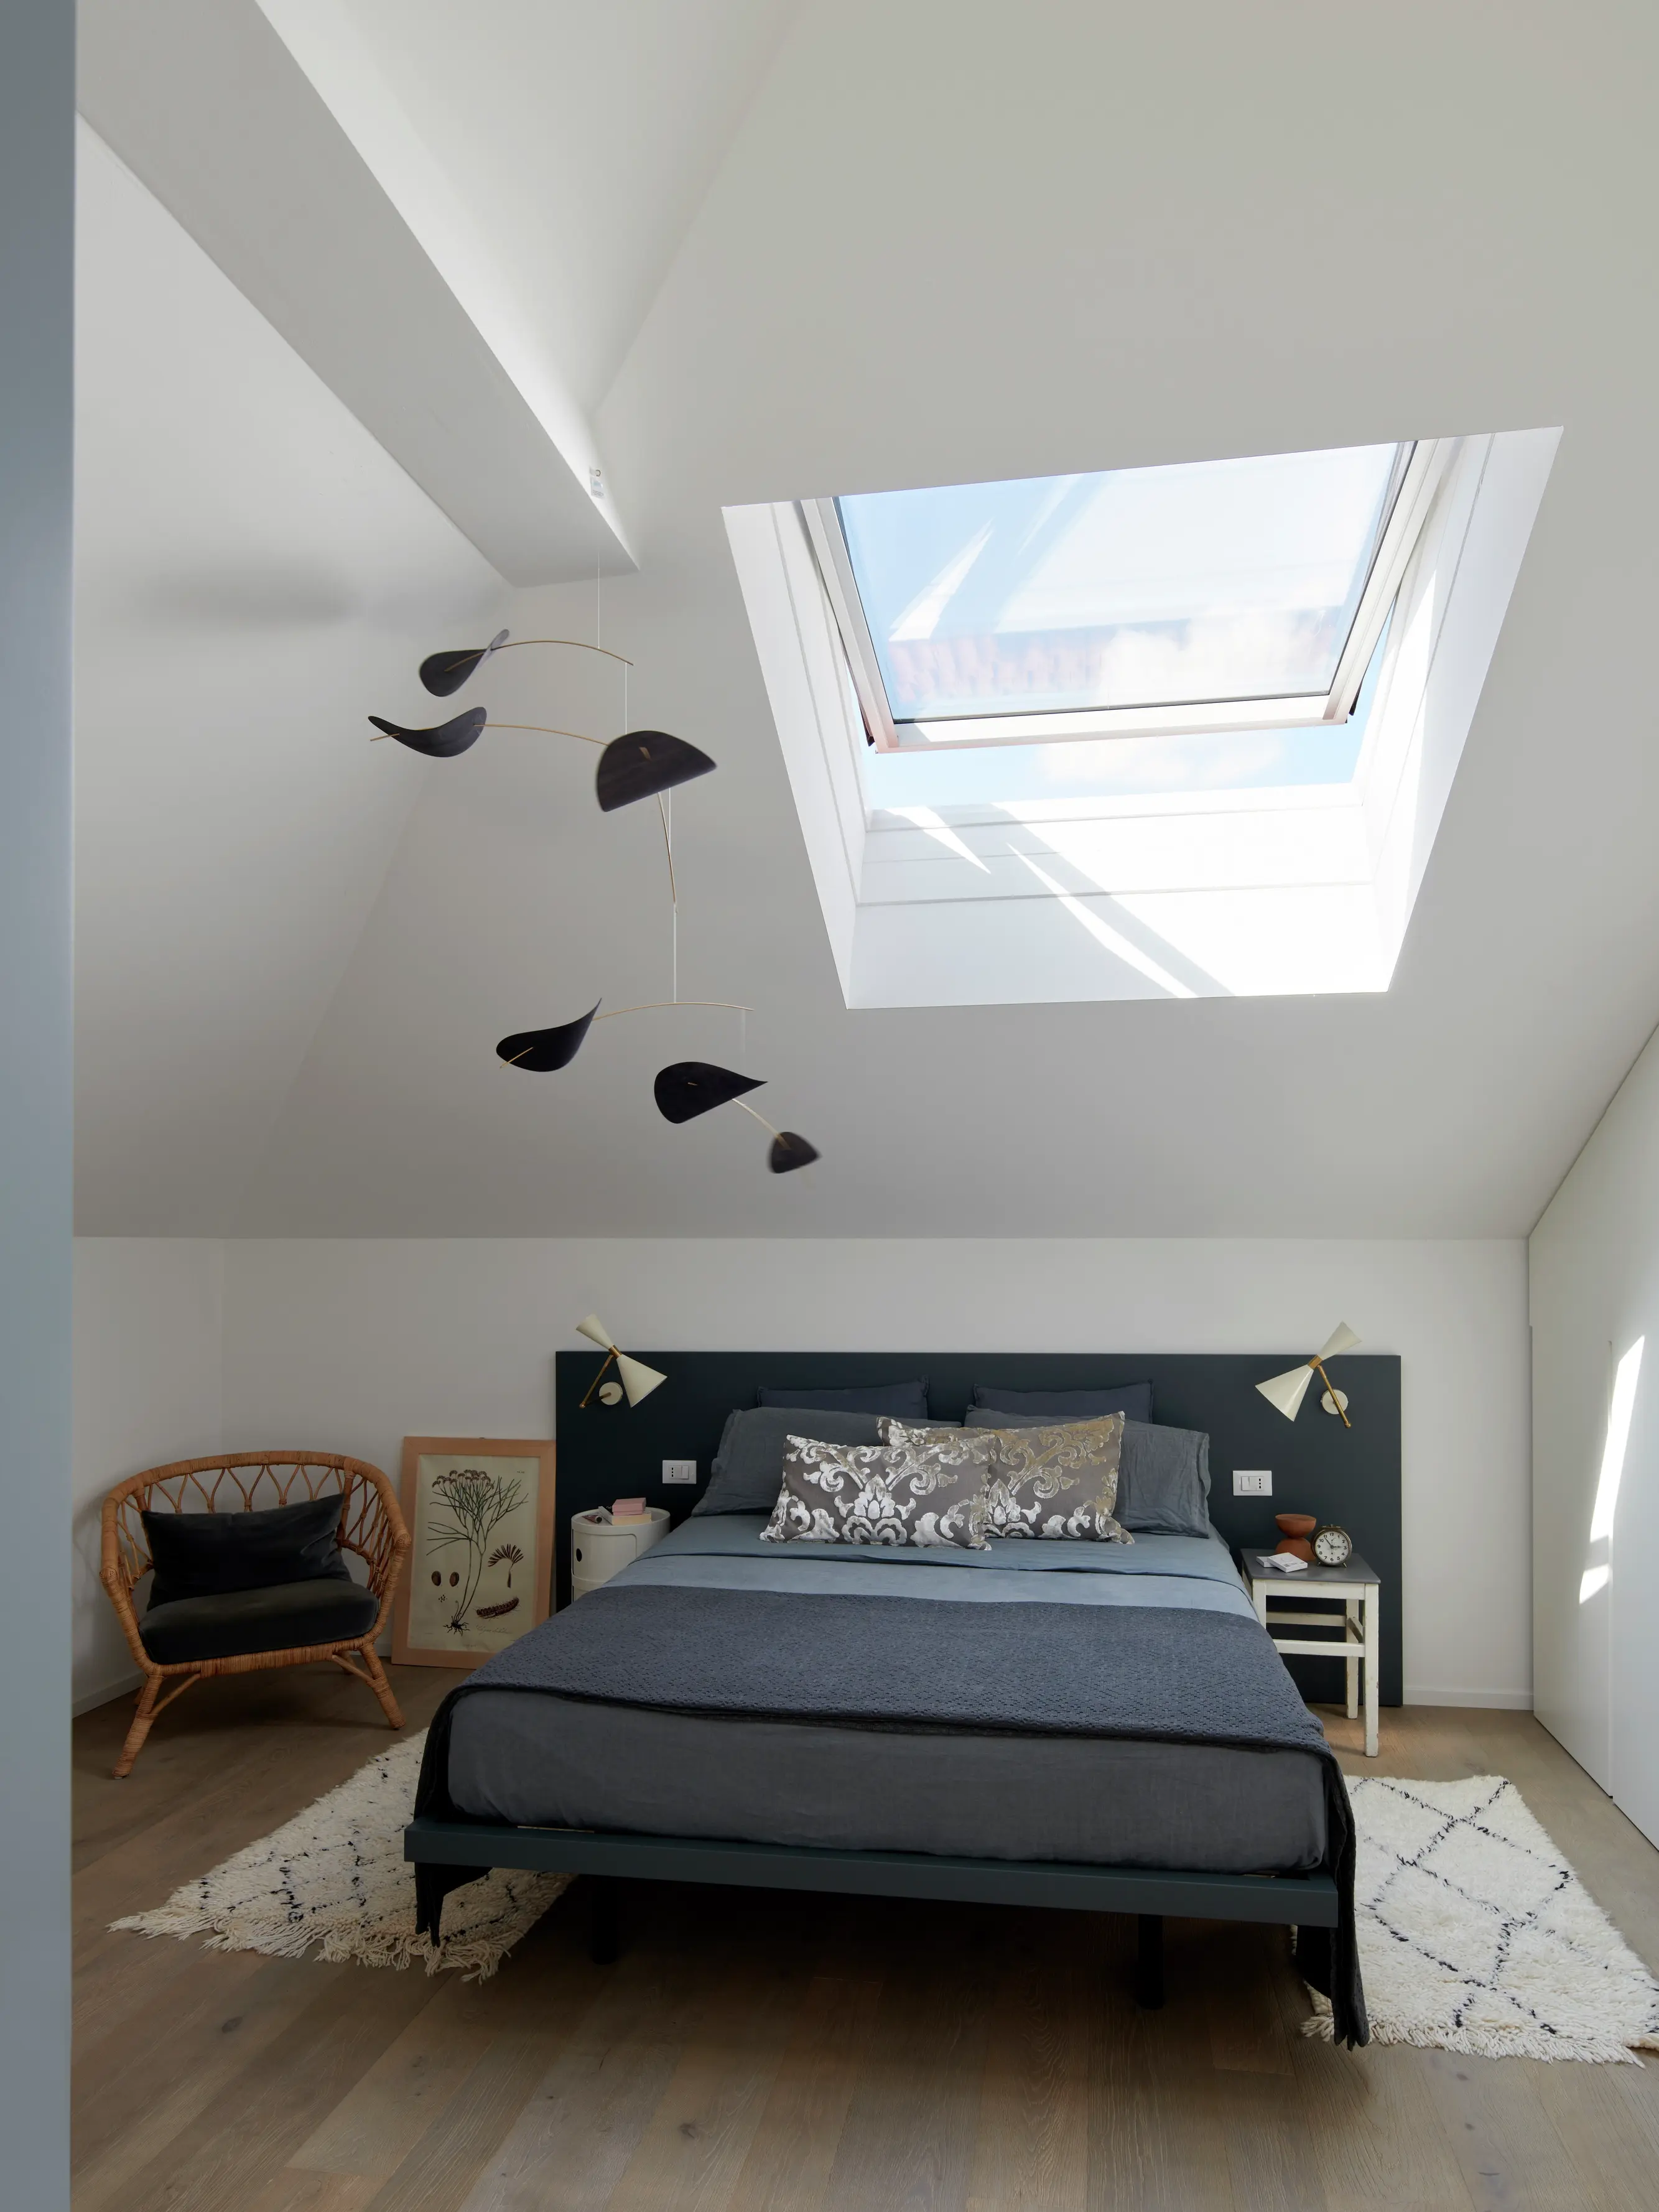 Chambre moderne avec lumière naturelle provenant d'une fenêtre de toit VELUX, décor minimaliste et mobilier confortable.